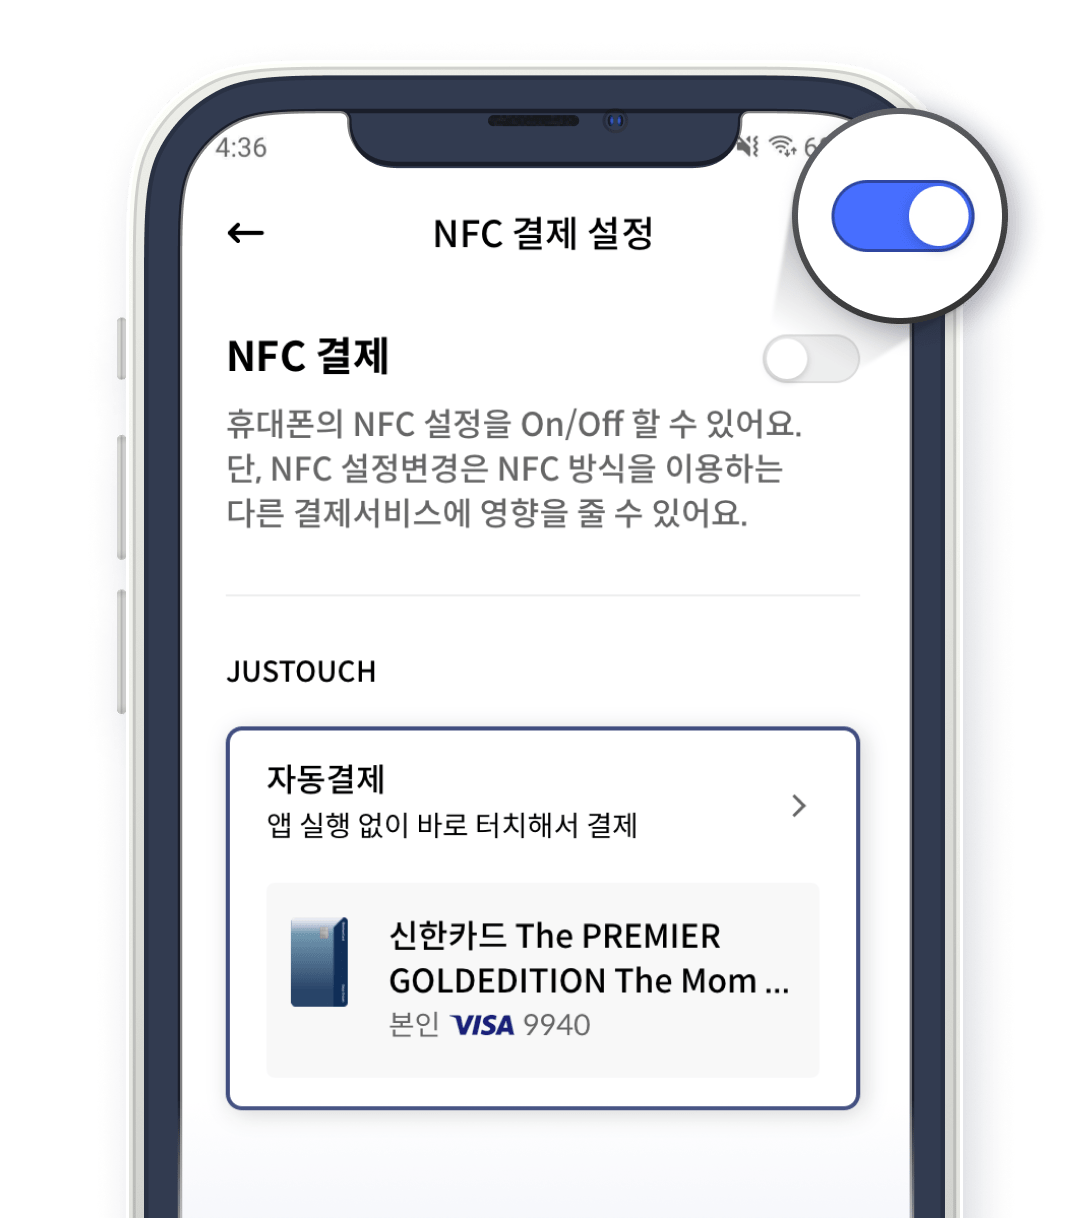 Step2. NFC 결제 On으로 변경하기